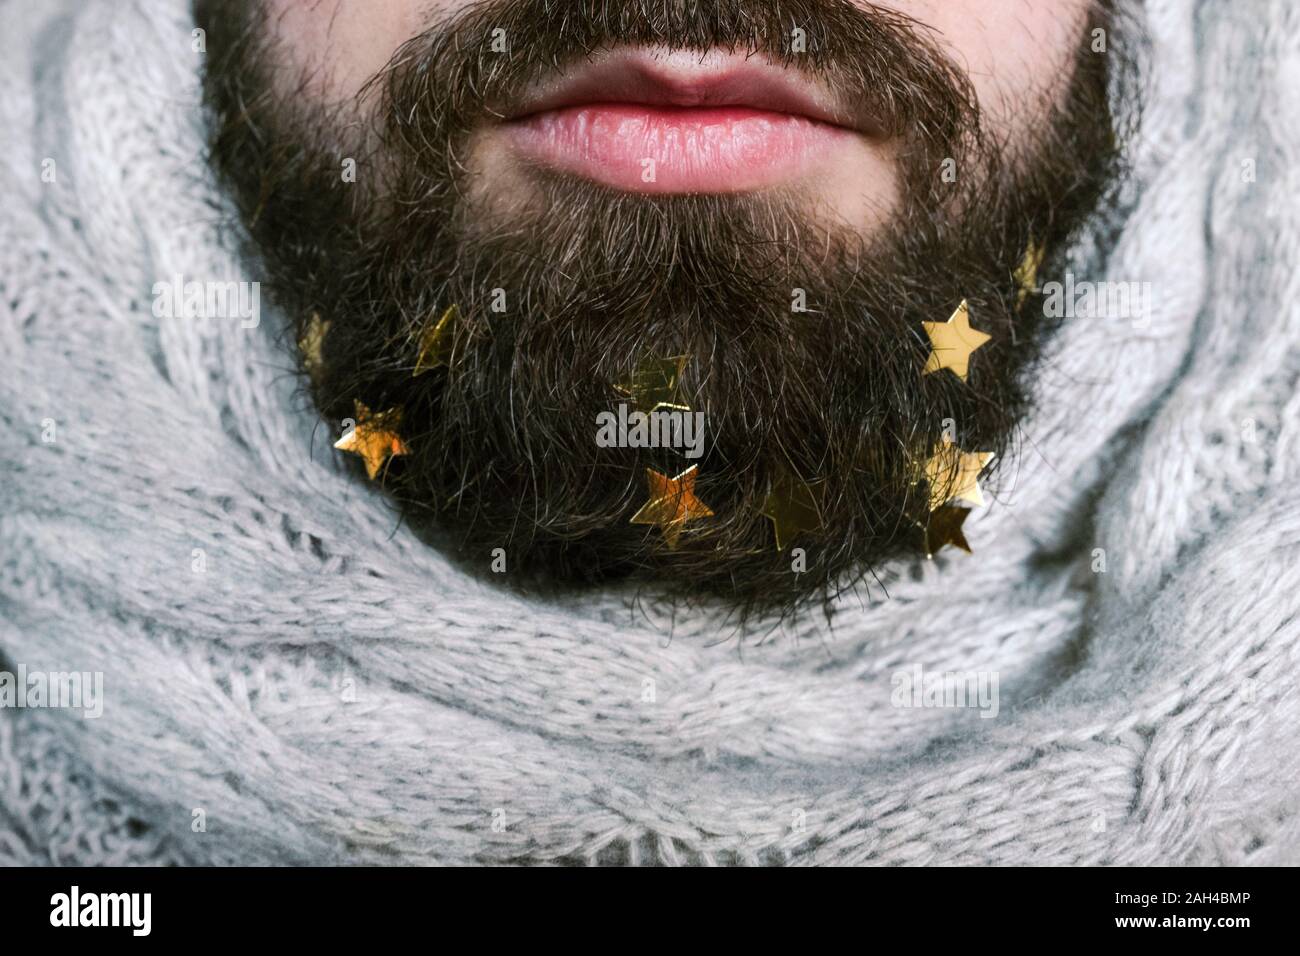 Golden stars in man's beard Stock Photo